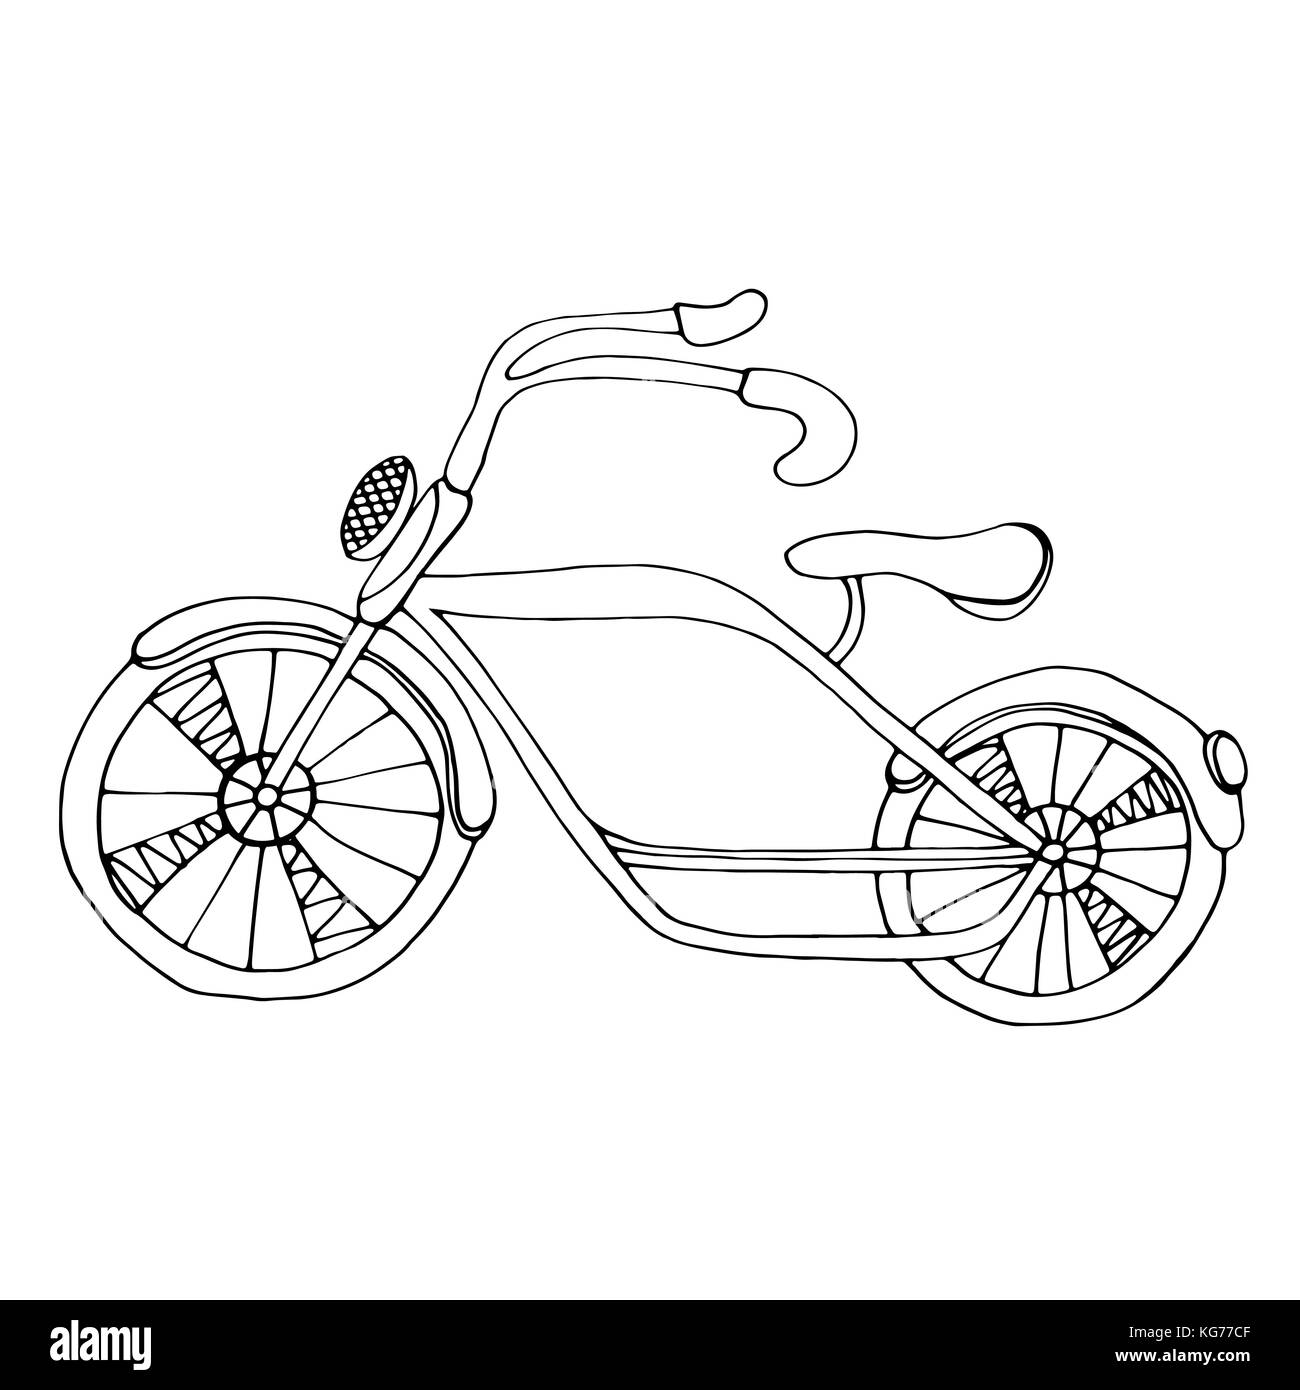 Nette einfache Skizze des Fahrrads, isoliert auf weißem Stock-Vektorgrafik  - Alamy